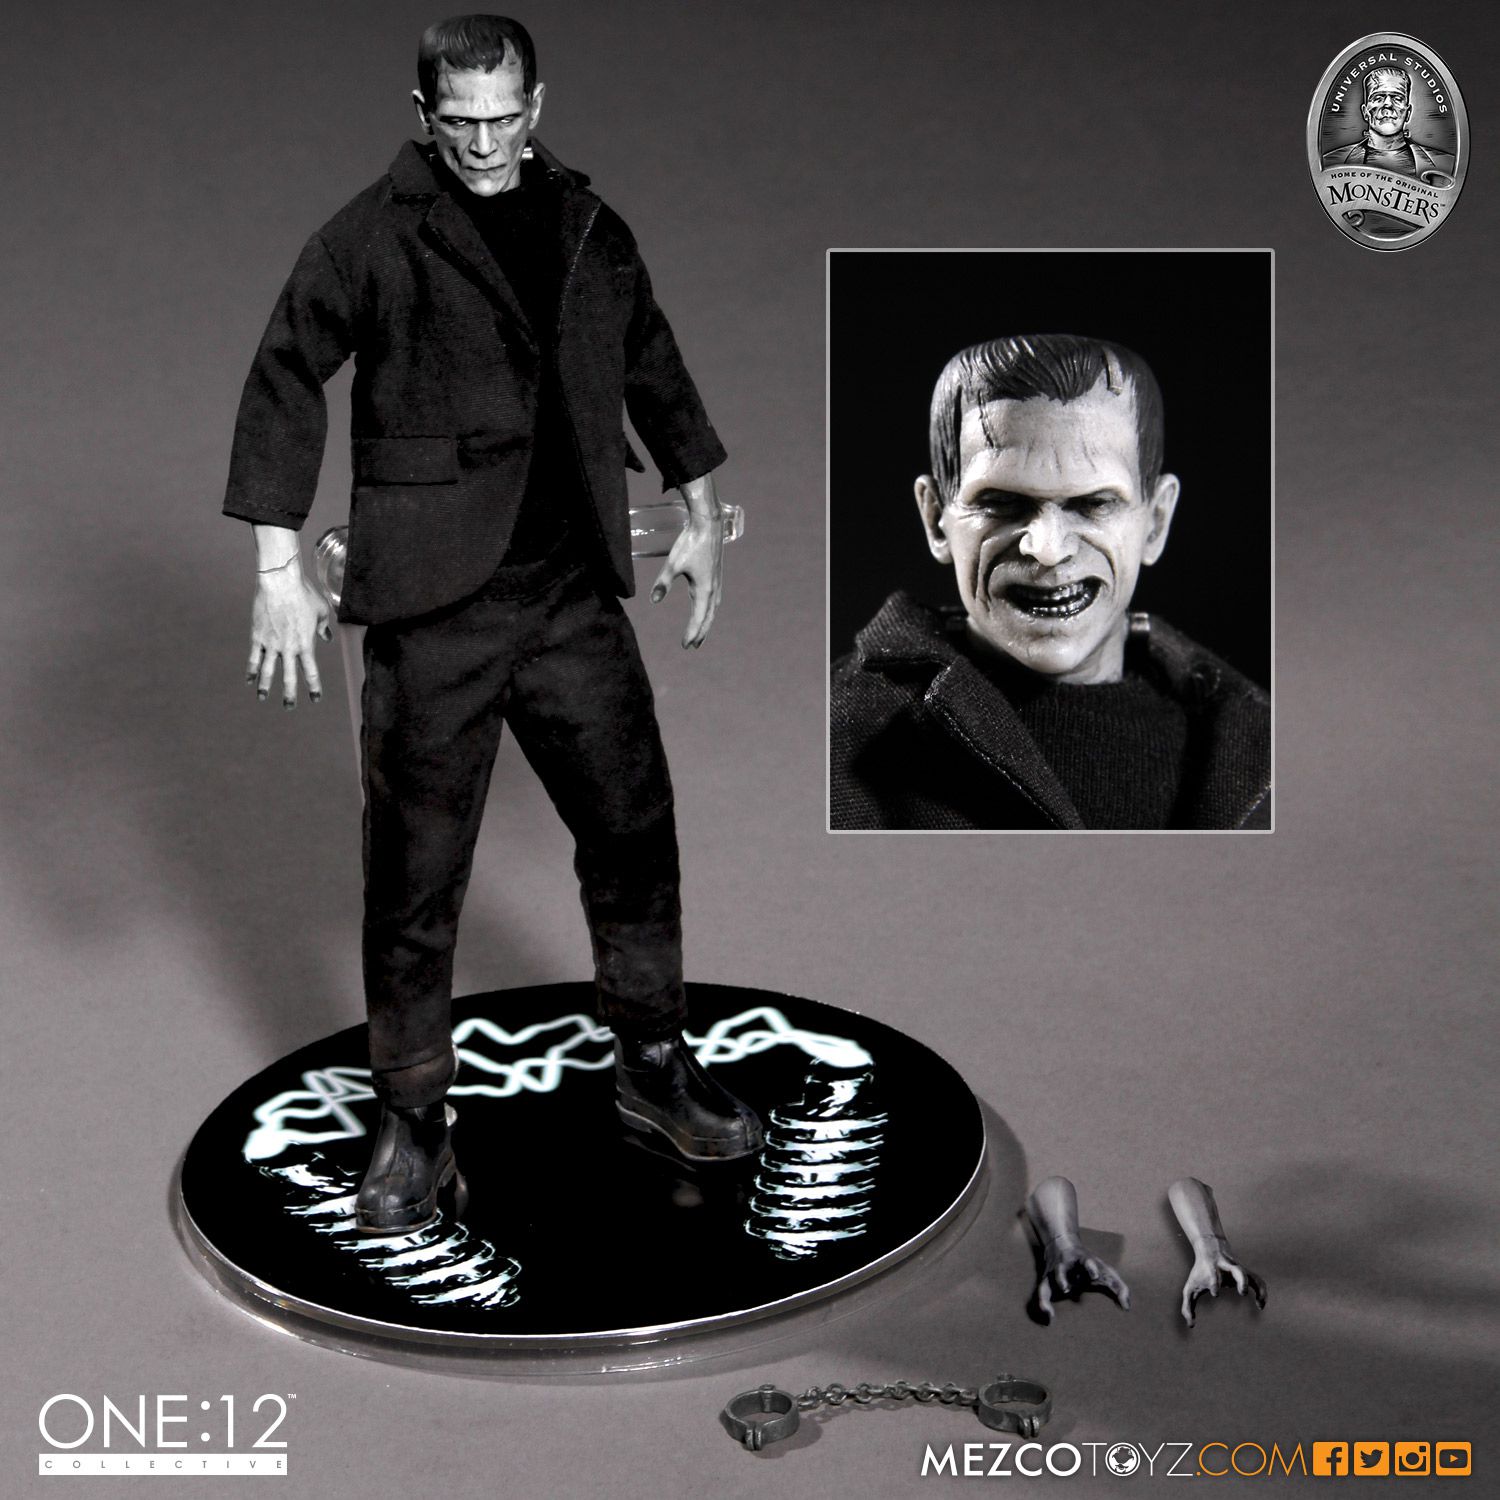 Mezco Frankenstein Action Figure